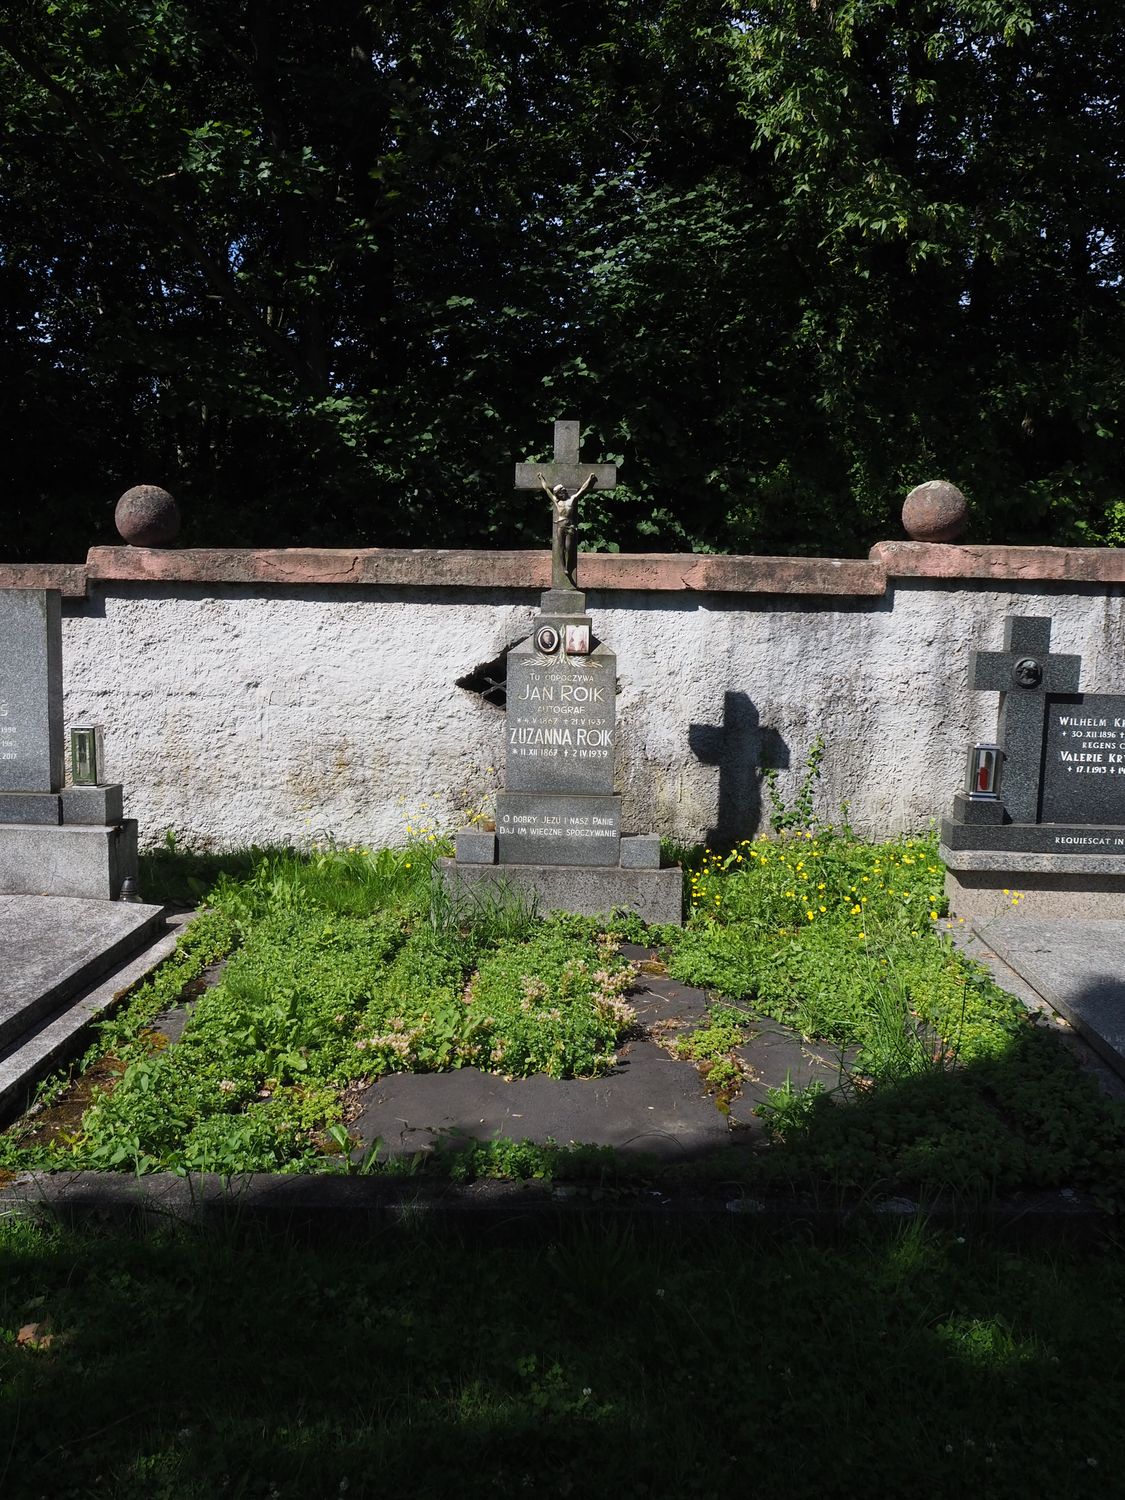 Tombstone of Jan and Zuzanna Roik, cemetery in Český Těšín, as of 2022.